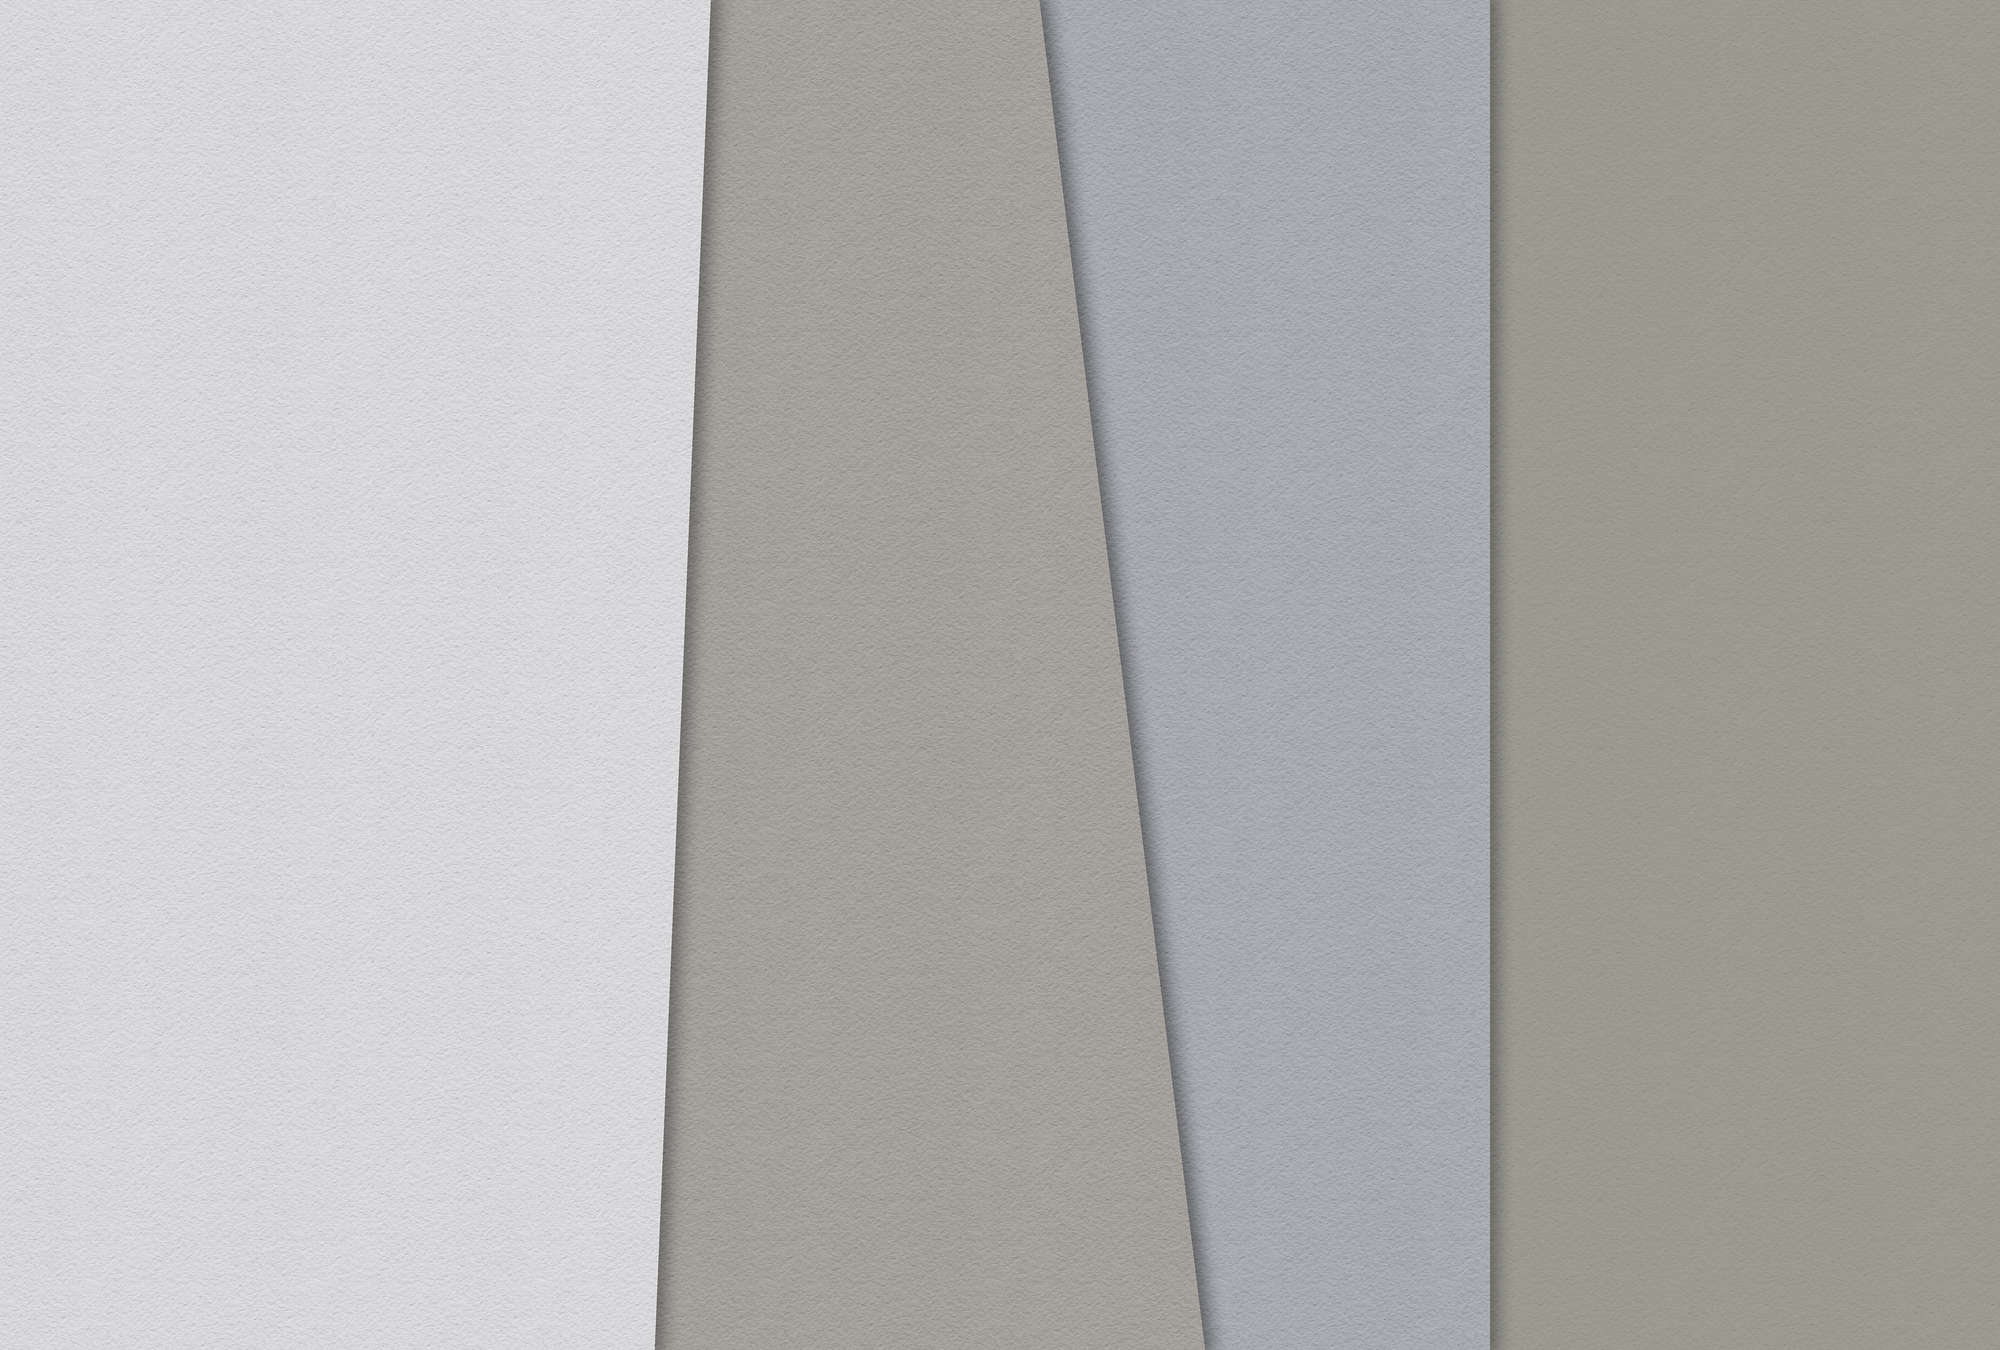             Layered paper 4 - Fototapete Farbflächen Minimalismus in Büttenpapier Struktur – Blau, Creme | Struktur Vlies
        